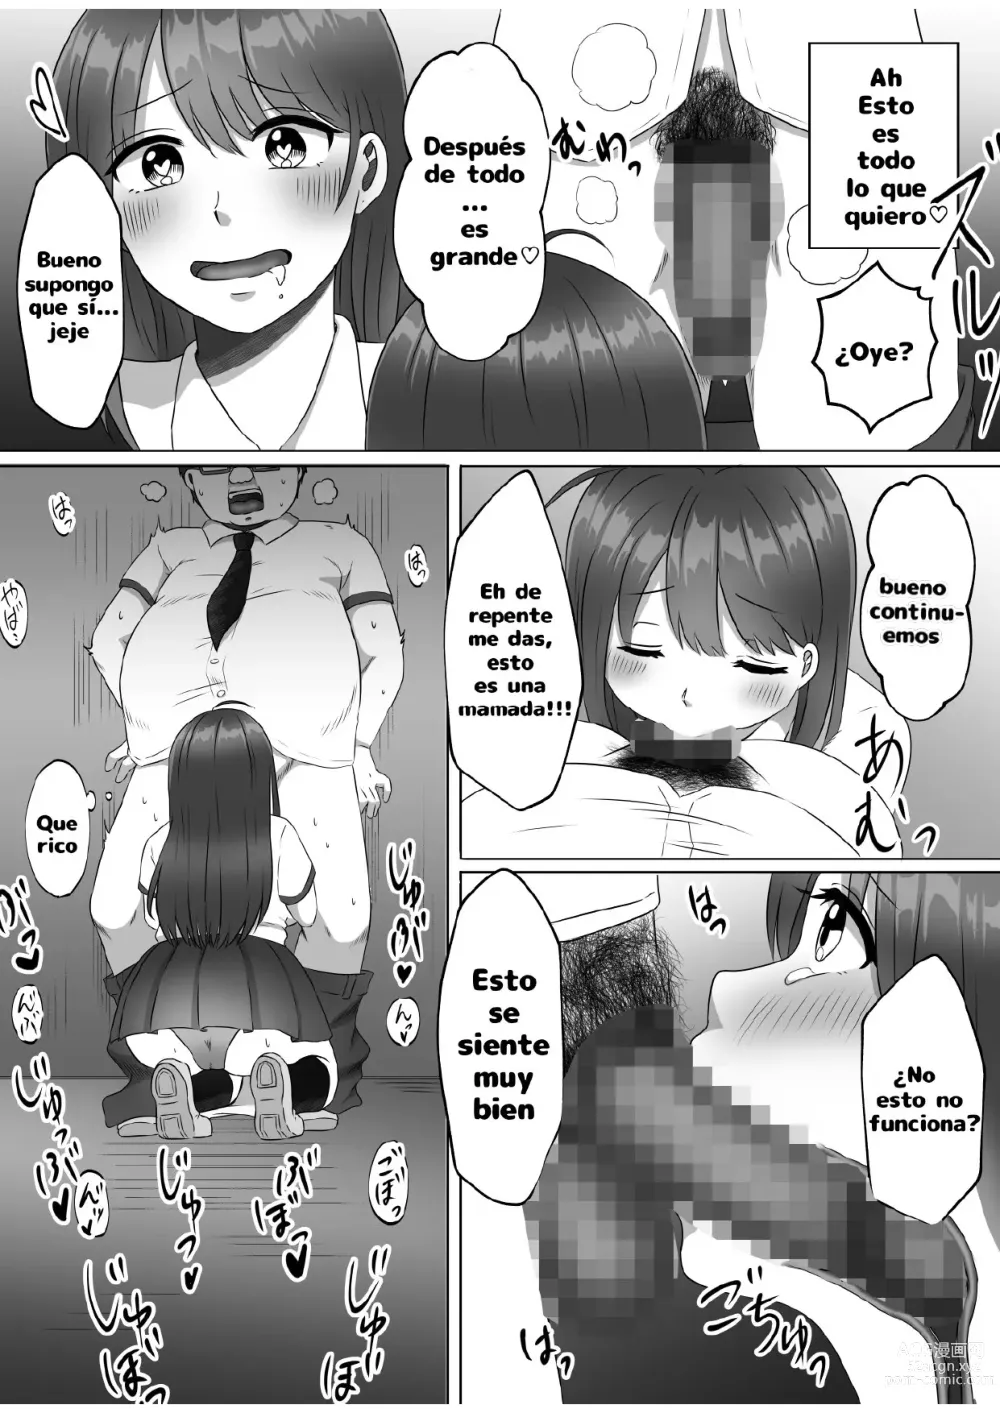 Page 18 of doujinshi ¿Porque me convertí en una mujer?